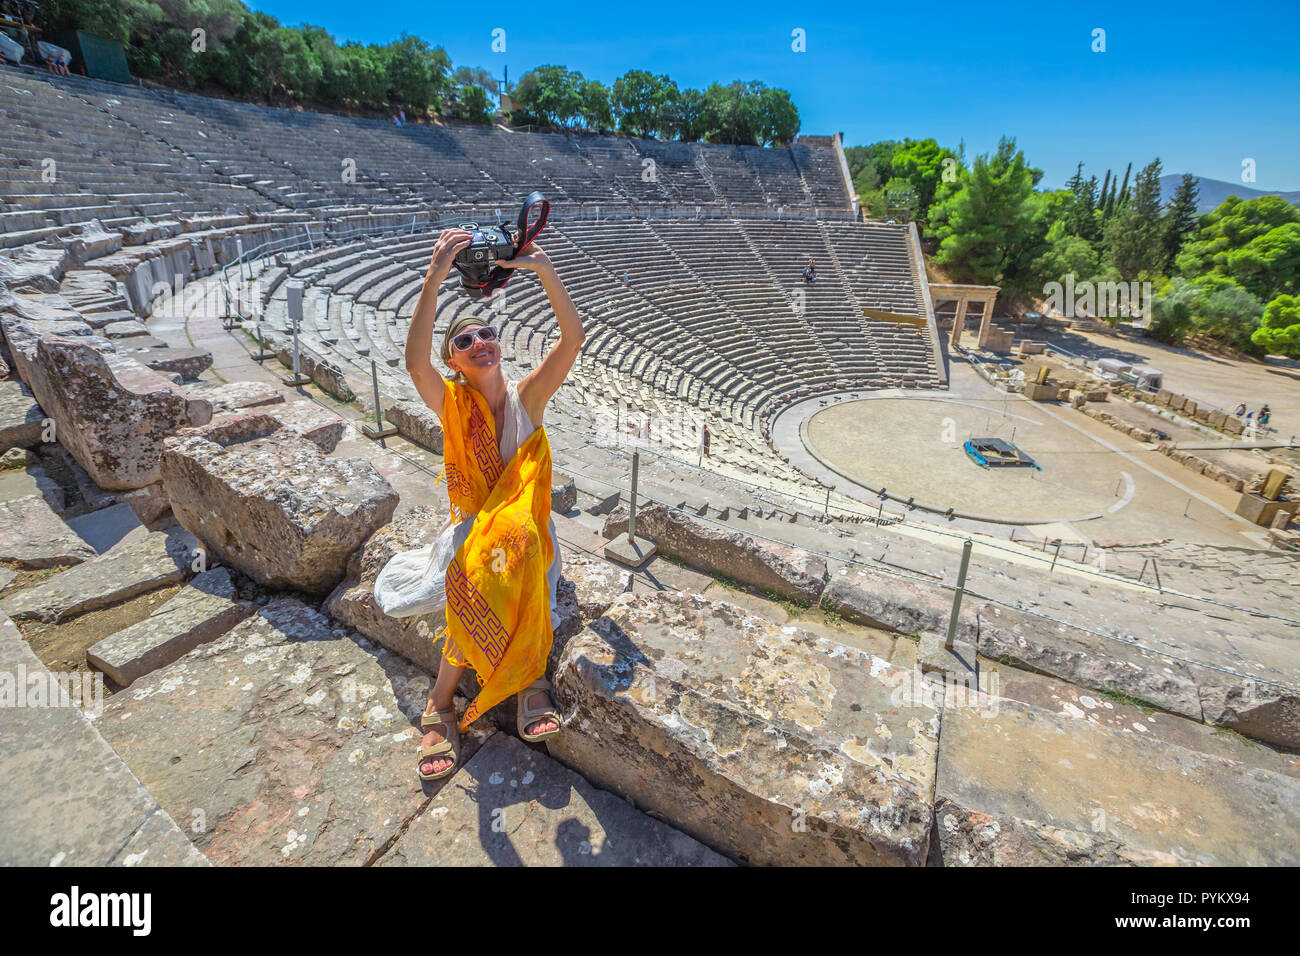 Fotografo di viaggio prendendo selfie con fotocamera reflex. Donna seduta sui gradini del Teatro di Epidaurus, prende le immagini nel sito archeologico, Peloponneso e Grecia. Vacanze estive lifestyle. Foto Stock